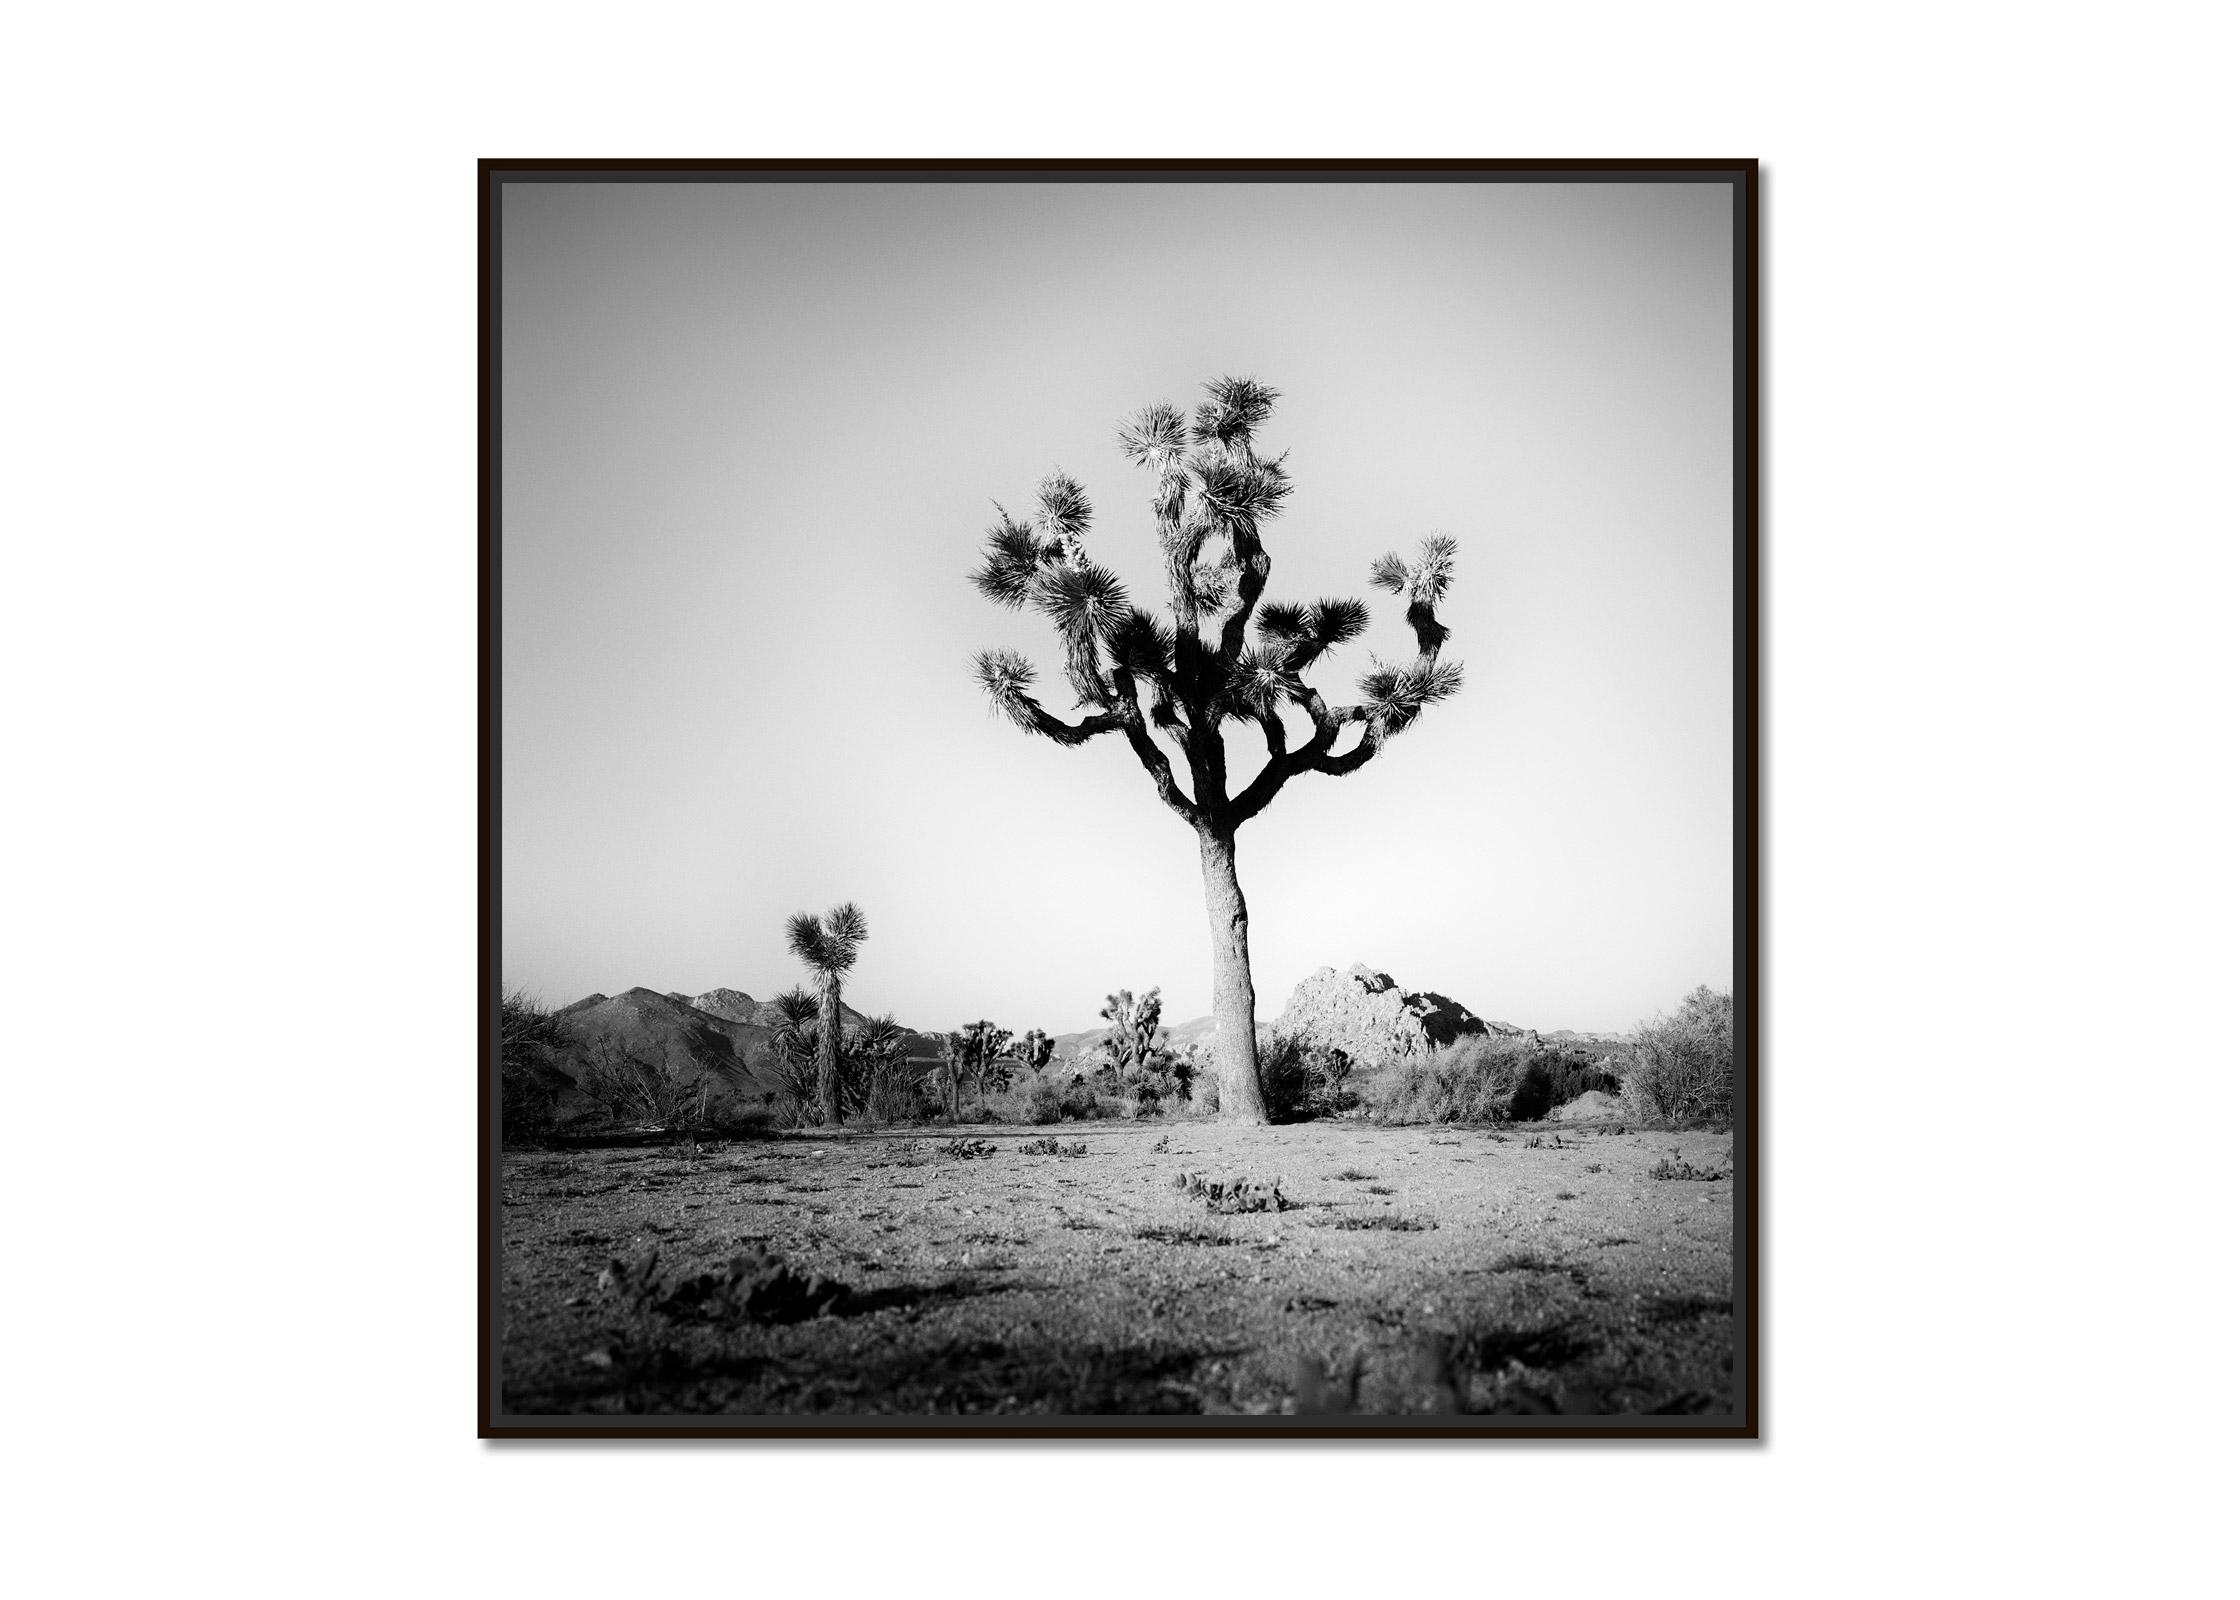 Joshua Tree, National Park, Kalifornien, USA, B&W-Landschaftsfotografie, Kunstdruck – Photograph von Gerald Berghammer